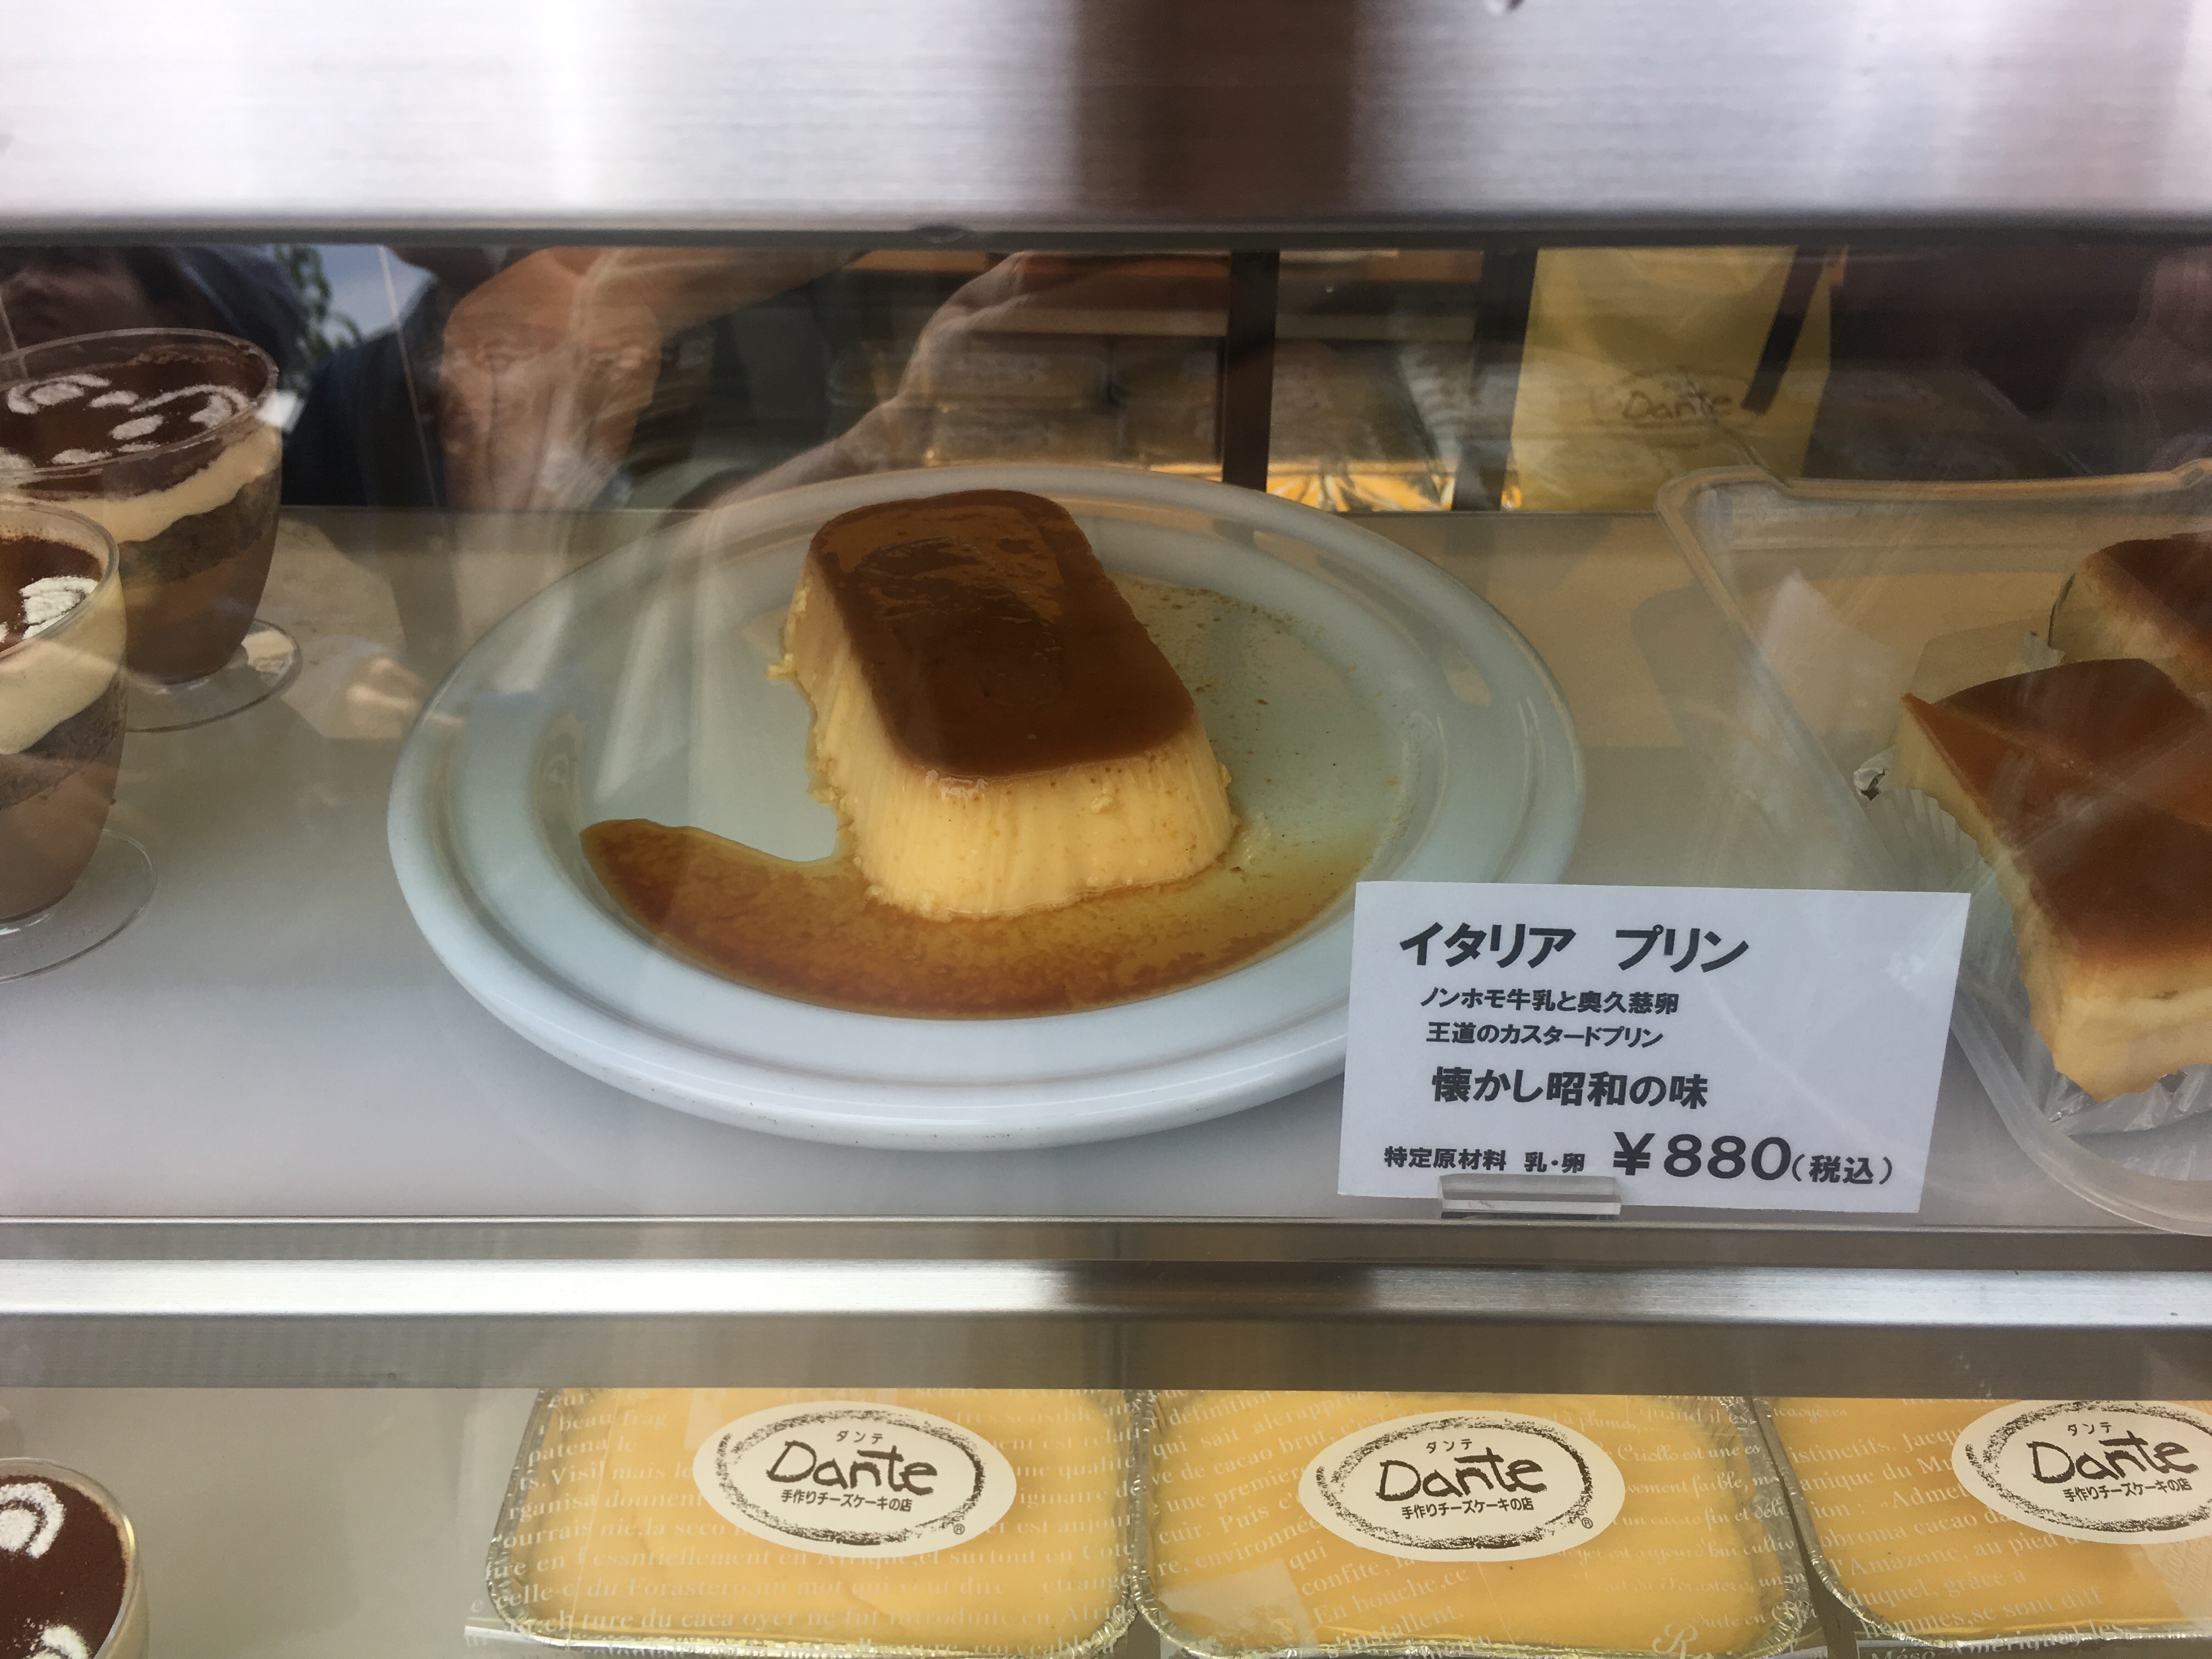 埼玉県さいたま市のチーズケーキ屋ダンテの「特選素材 夢のイタリアンプリン」